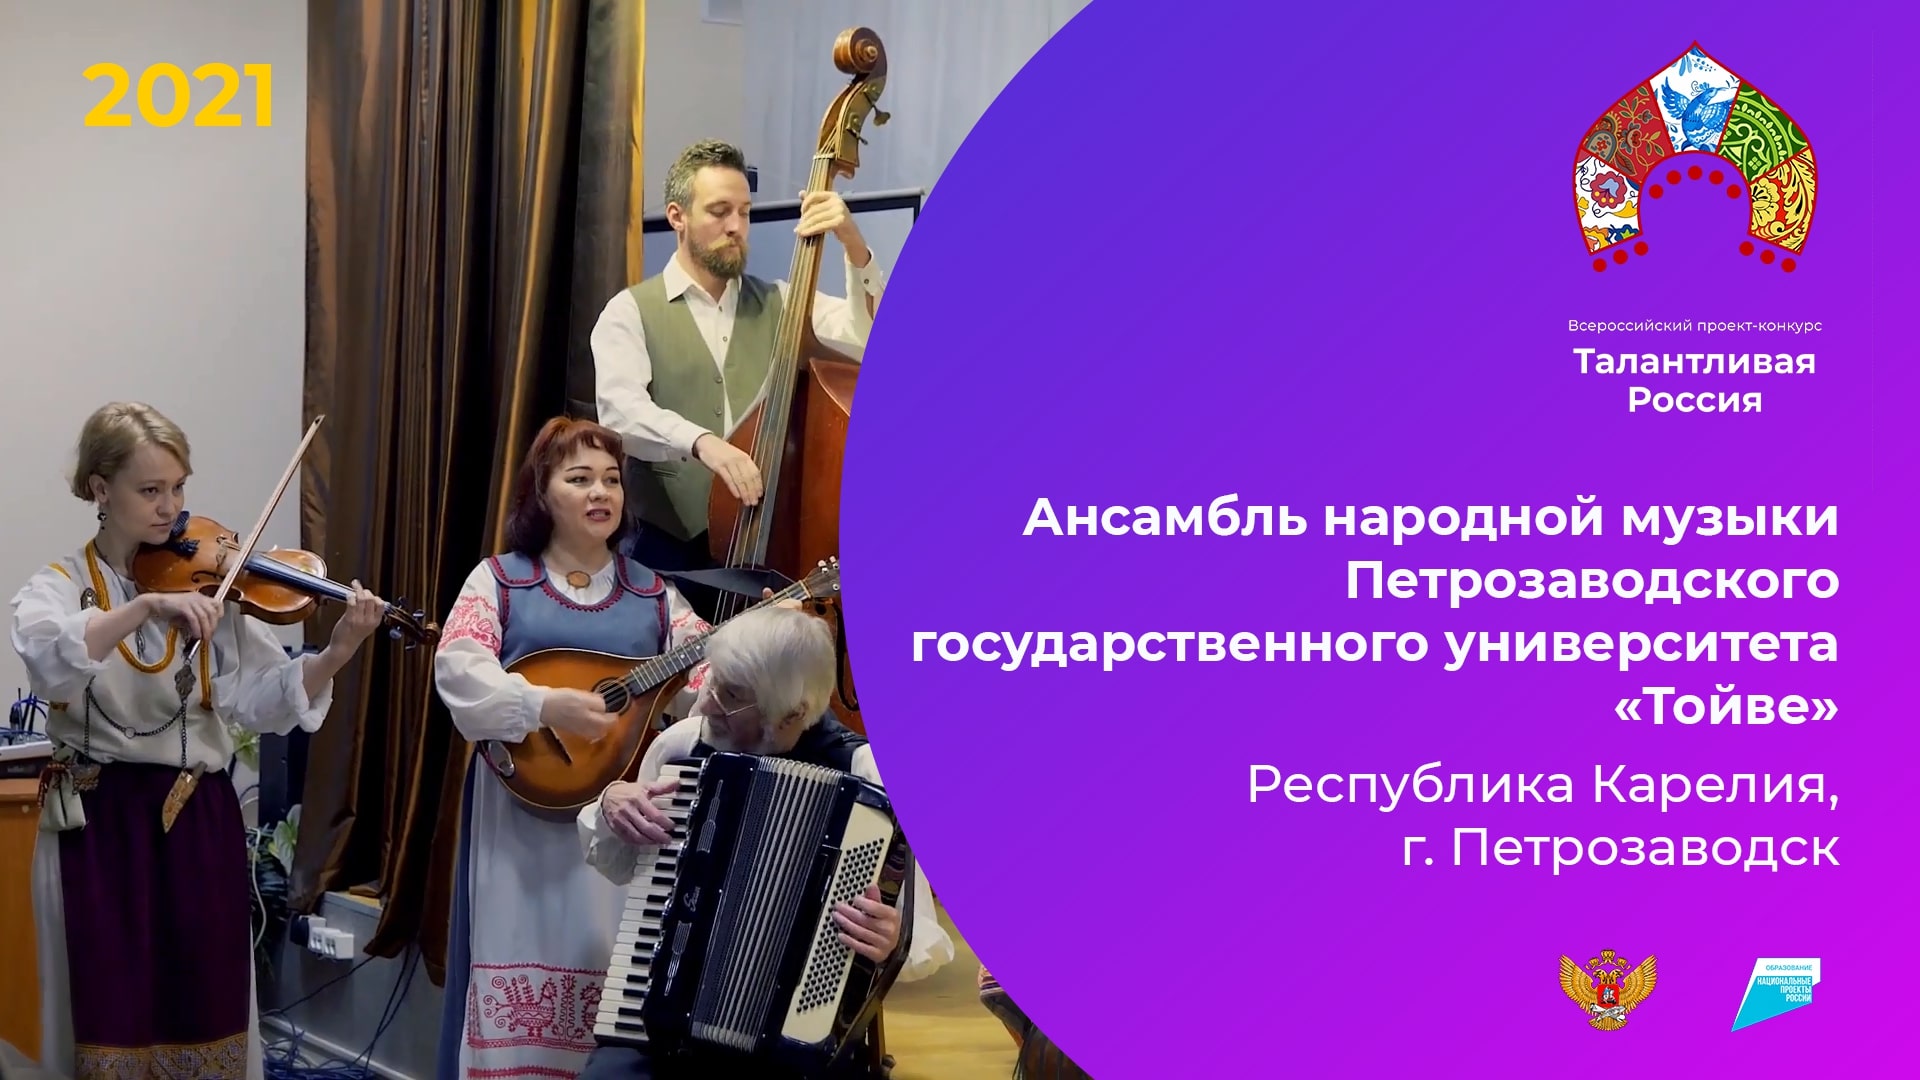 Ансамбль народной музыки Петрозаводского государственного университета «Тойве»